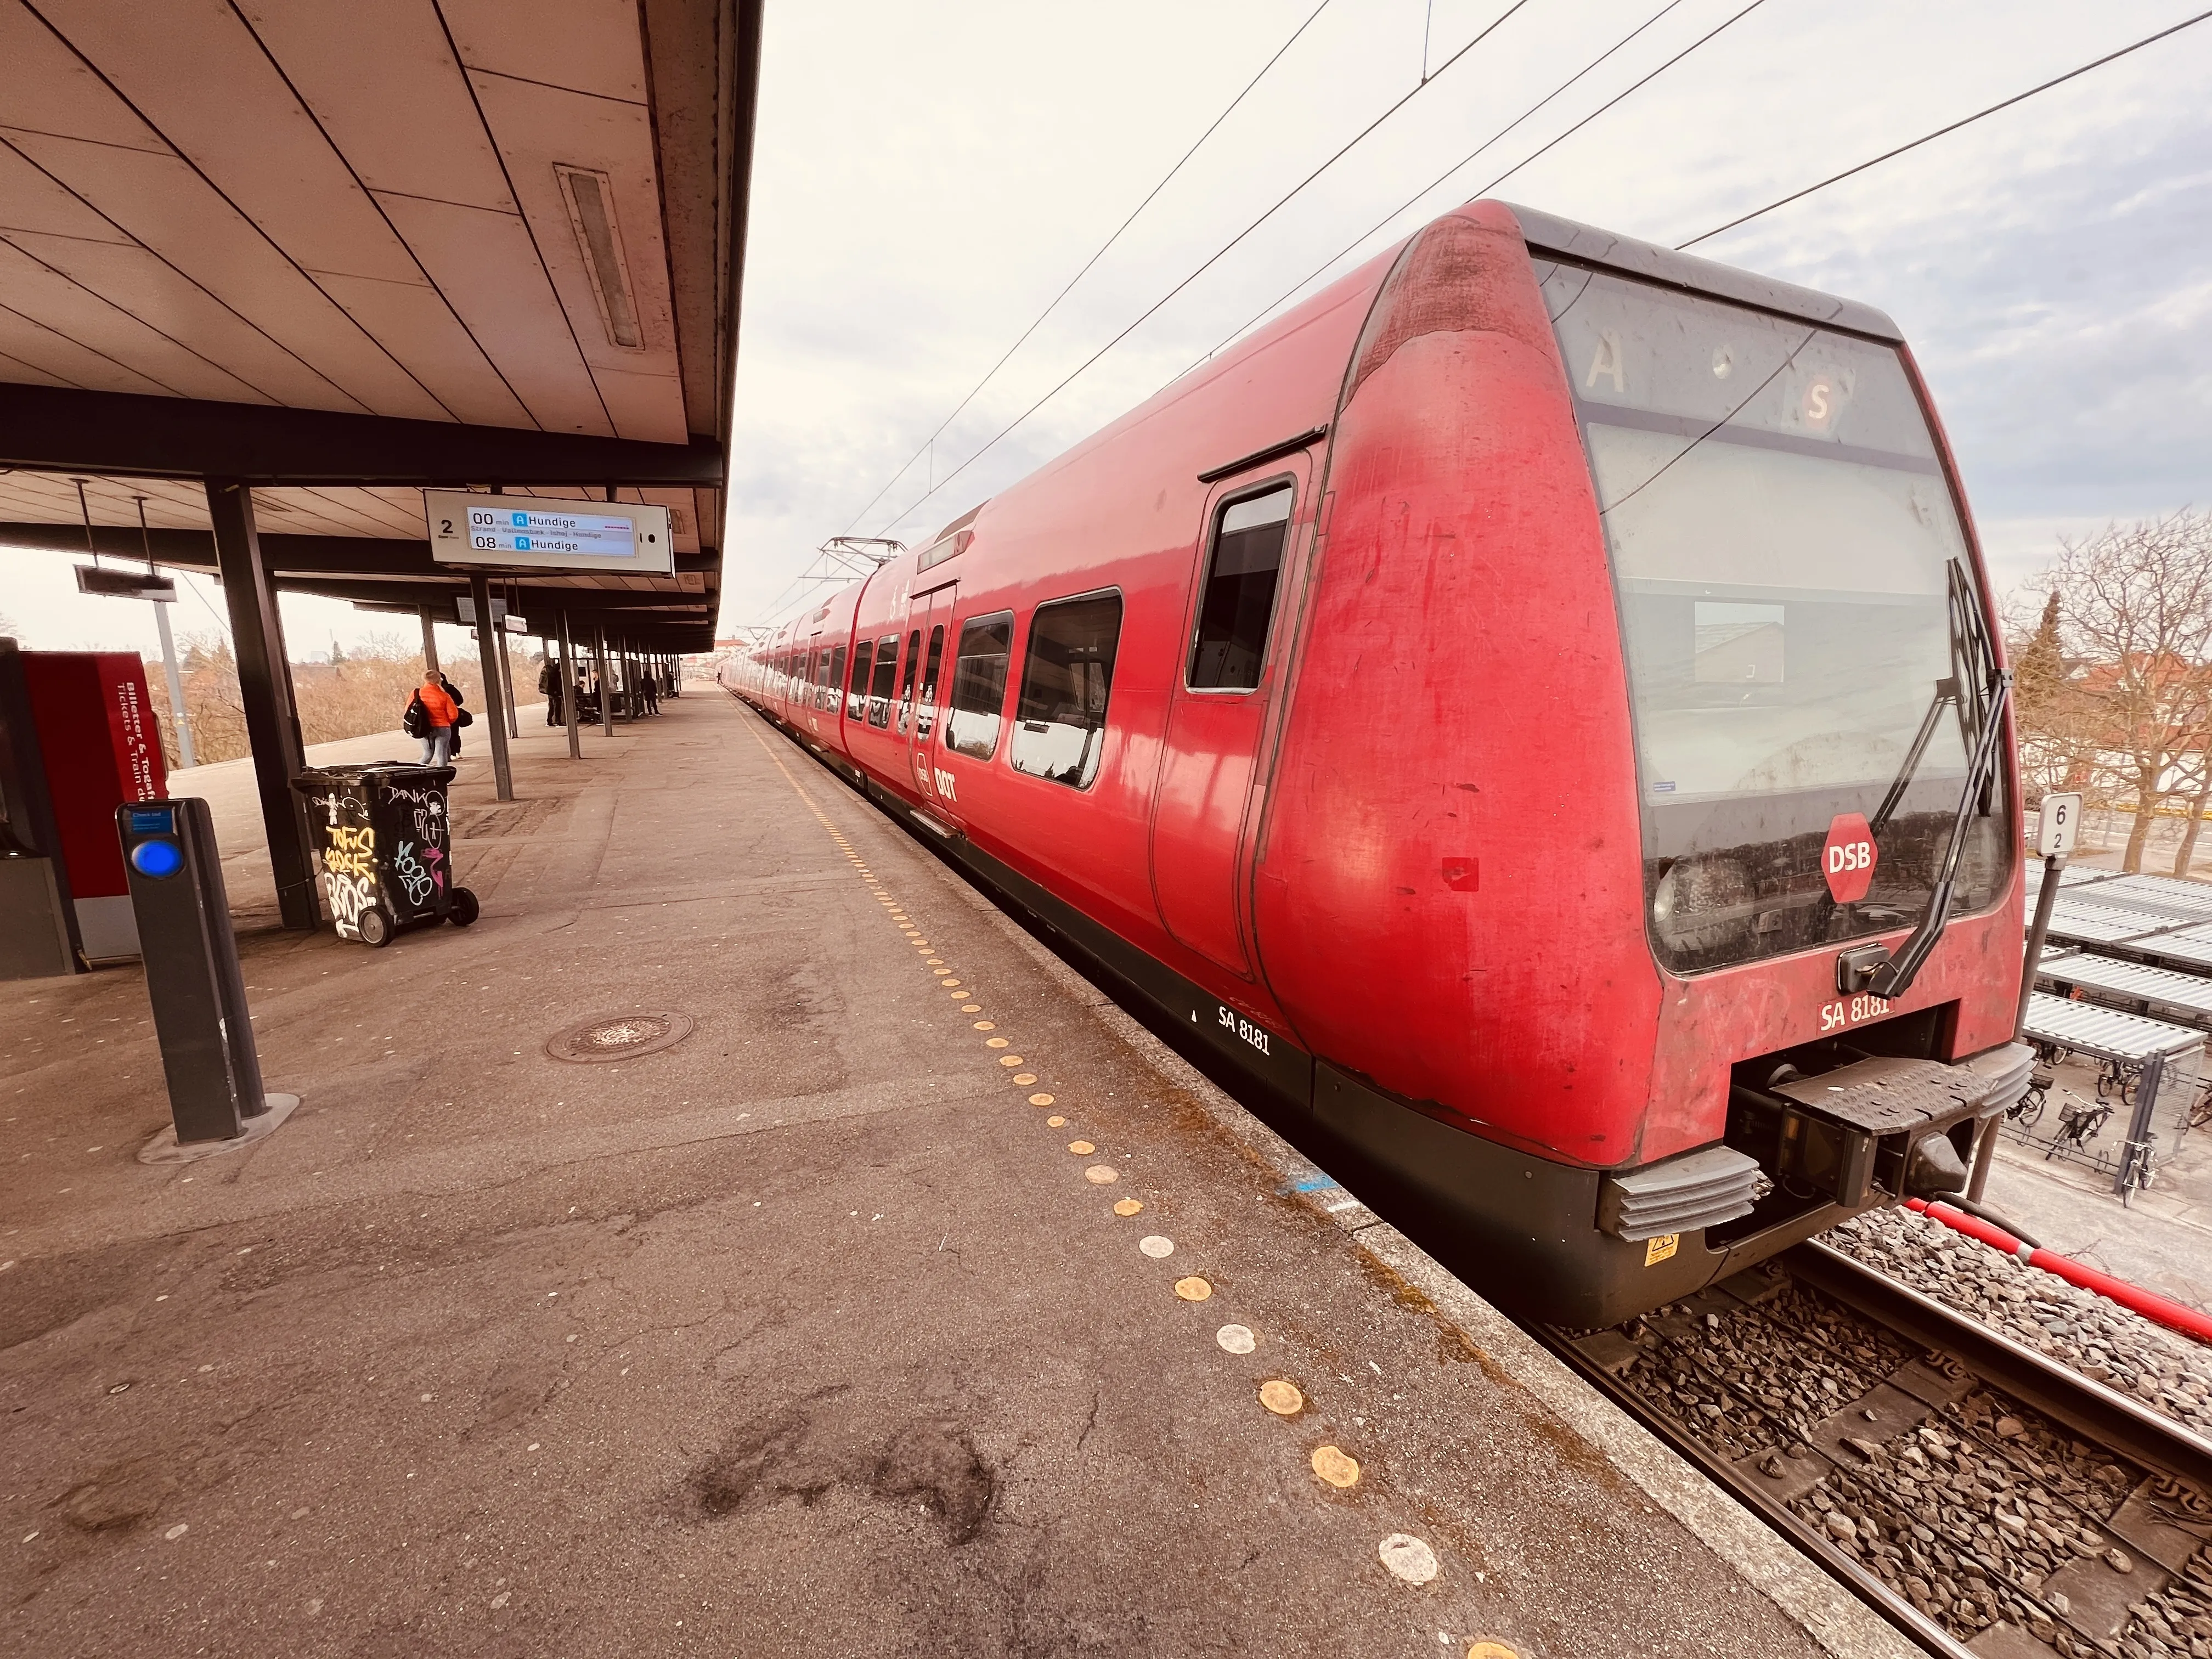 Billede af DSB SA 8181 fotograferet ud for Åmarken S-togstrinbræt.